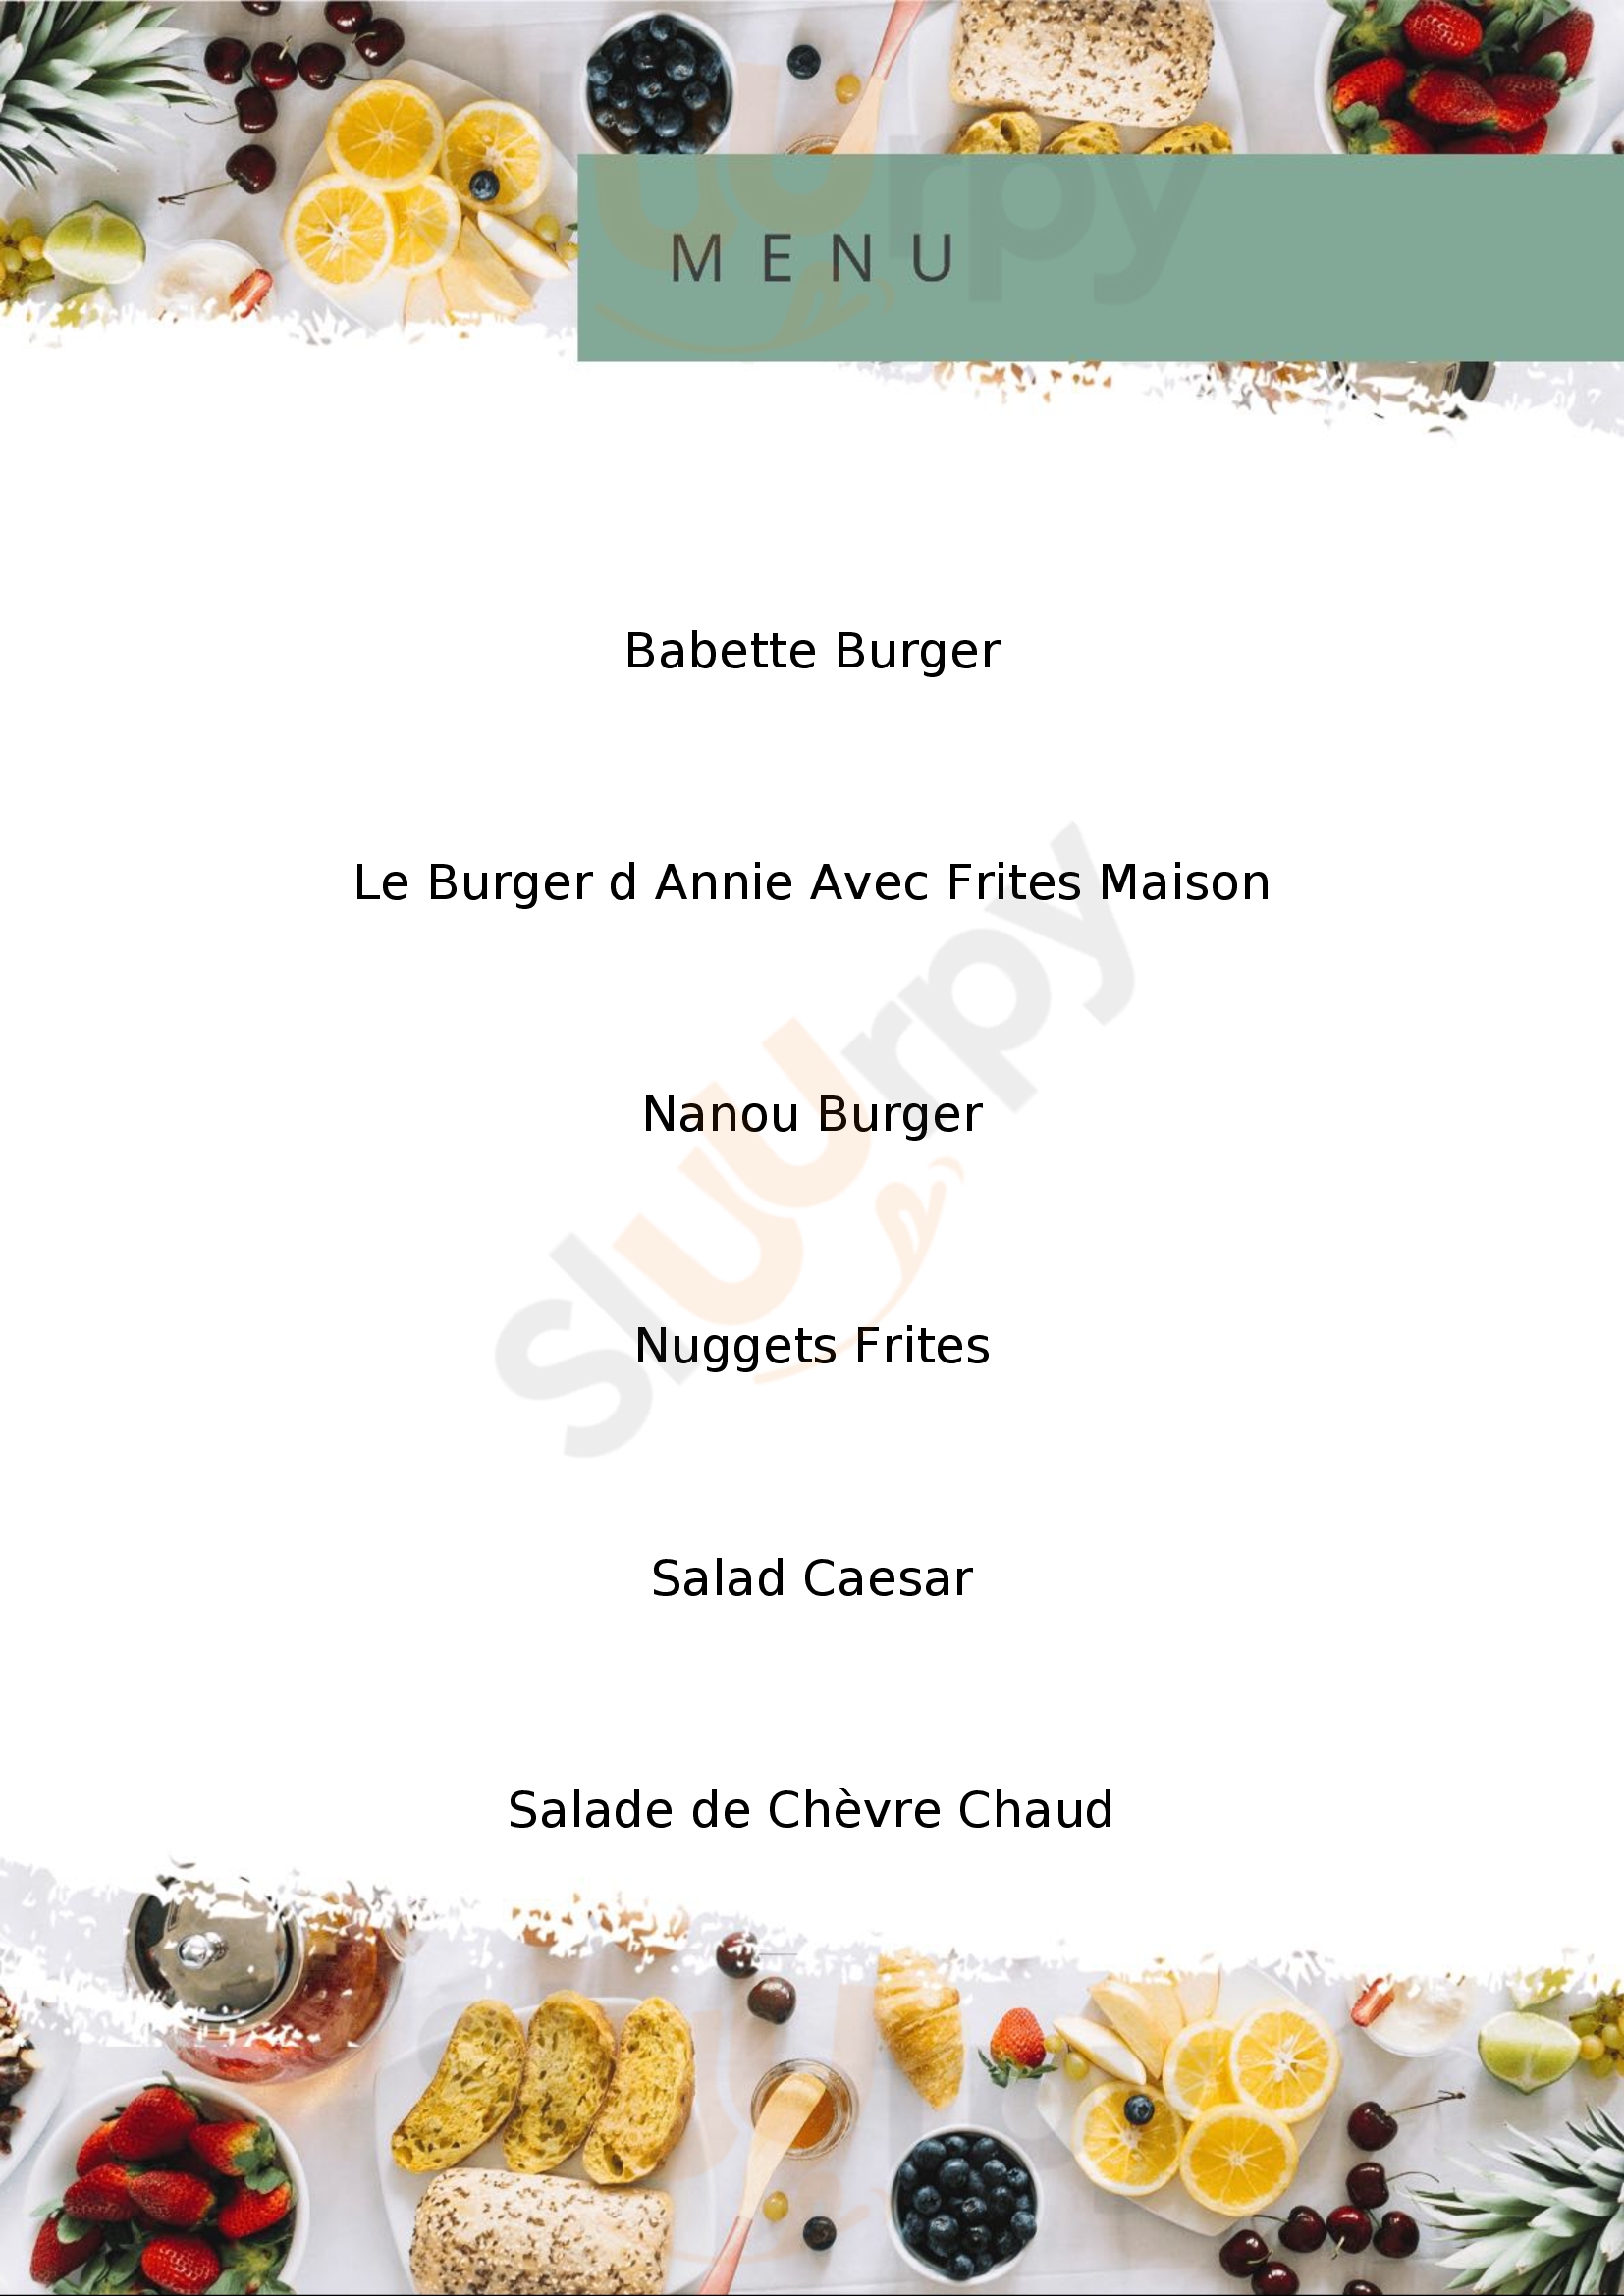 Les Burgers D'annie Blois Menu - 1